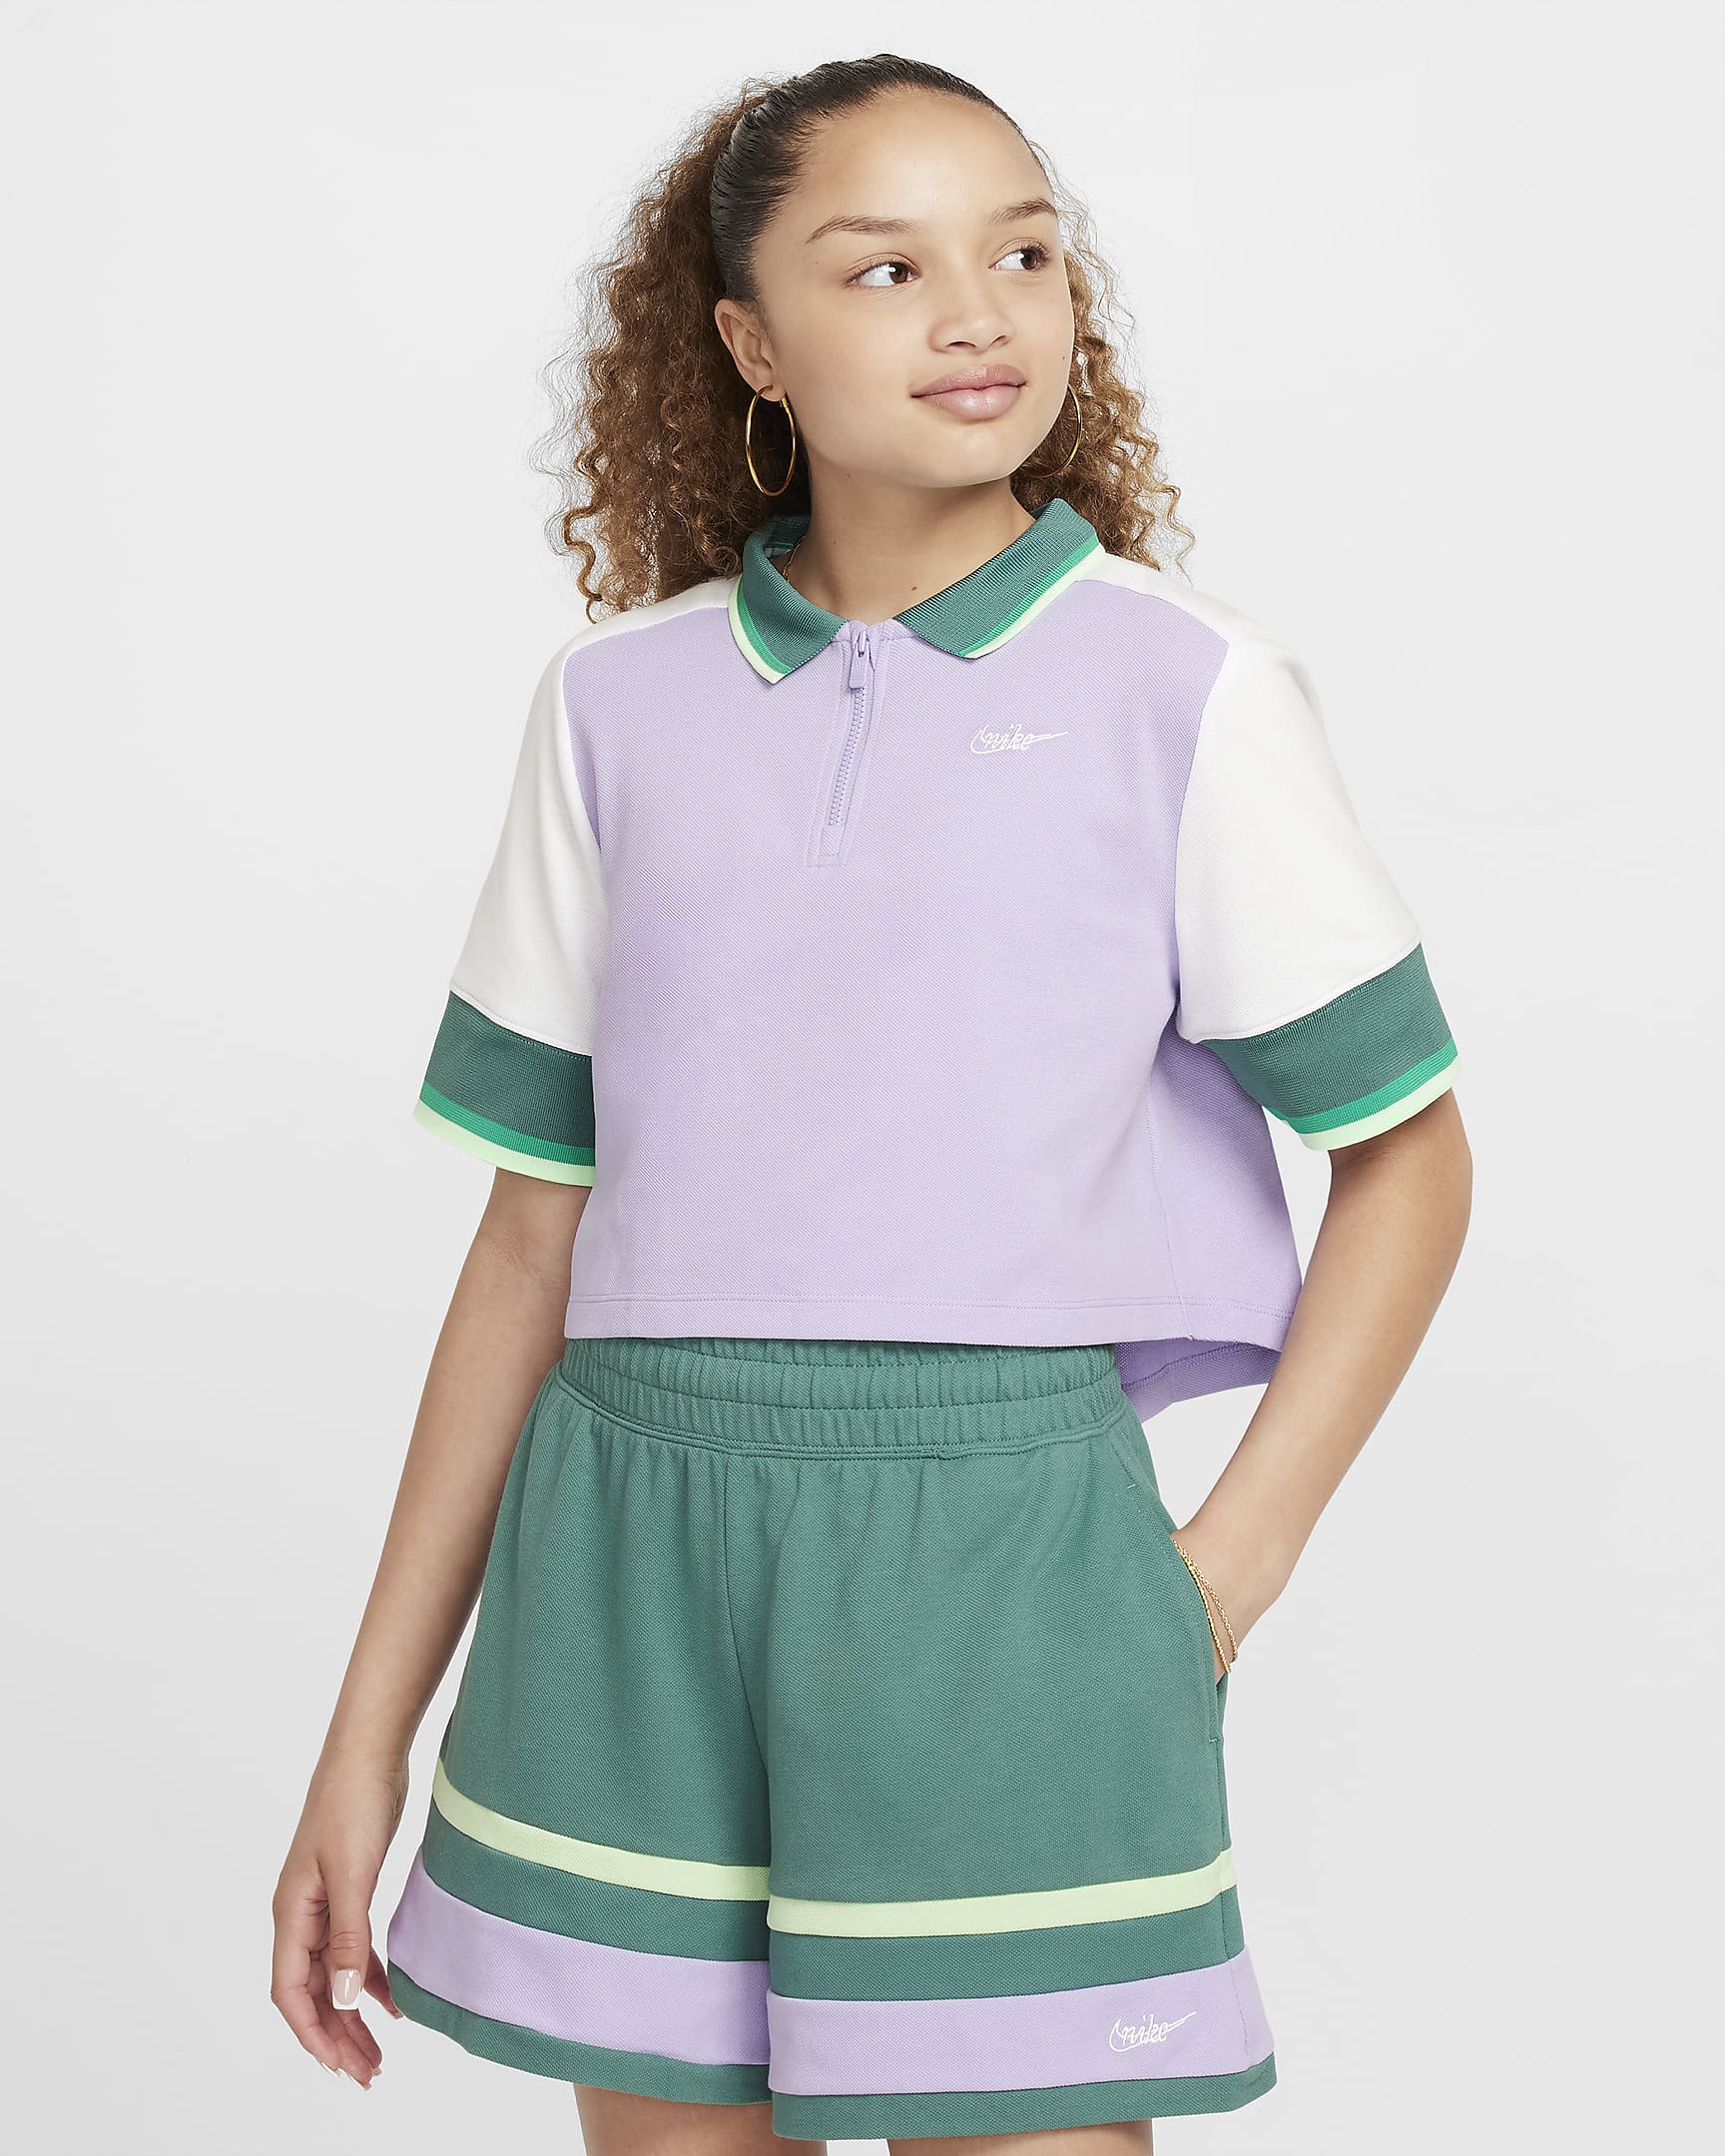 Nike Sportswear Girls' Crop Top - Hydrangeas/White